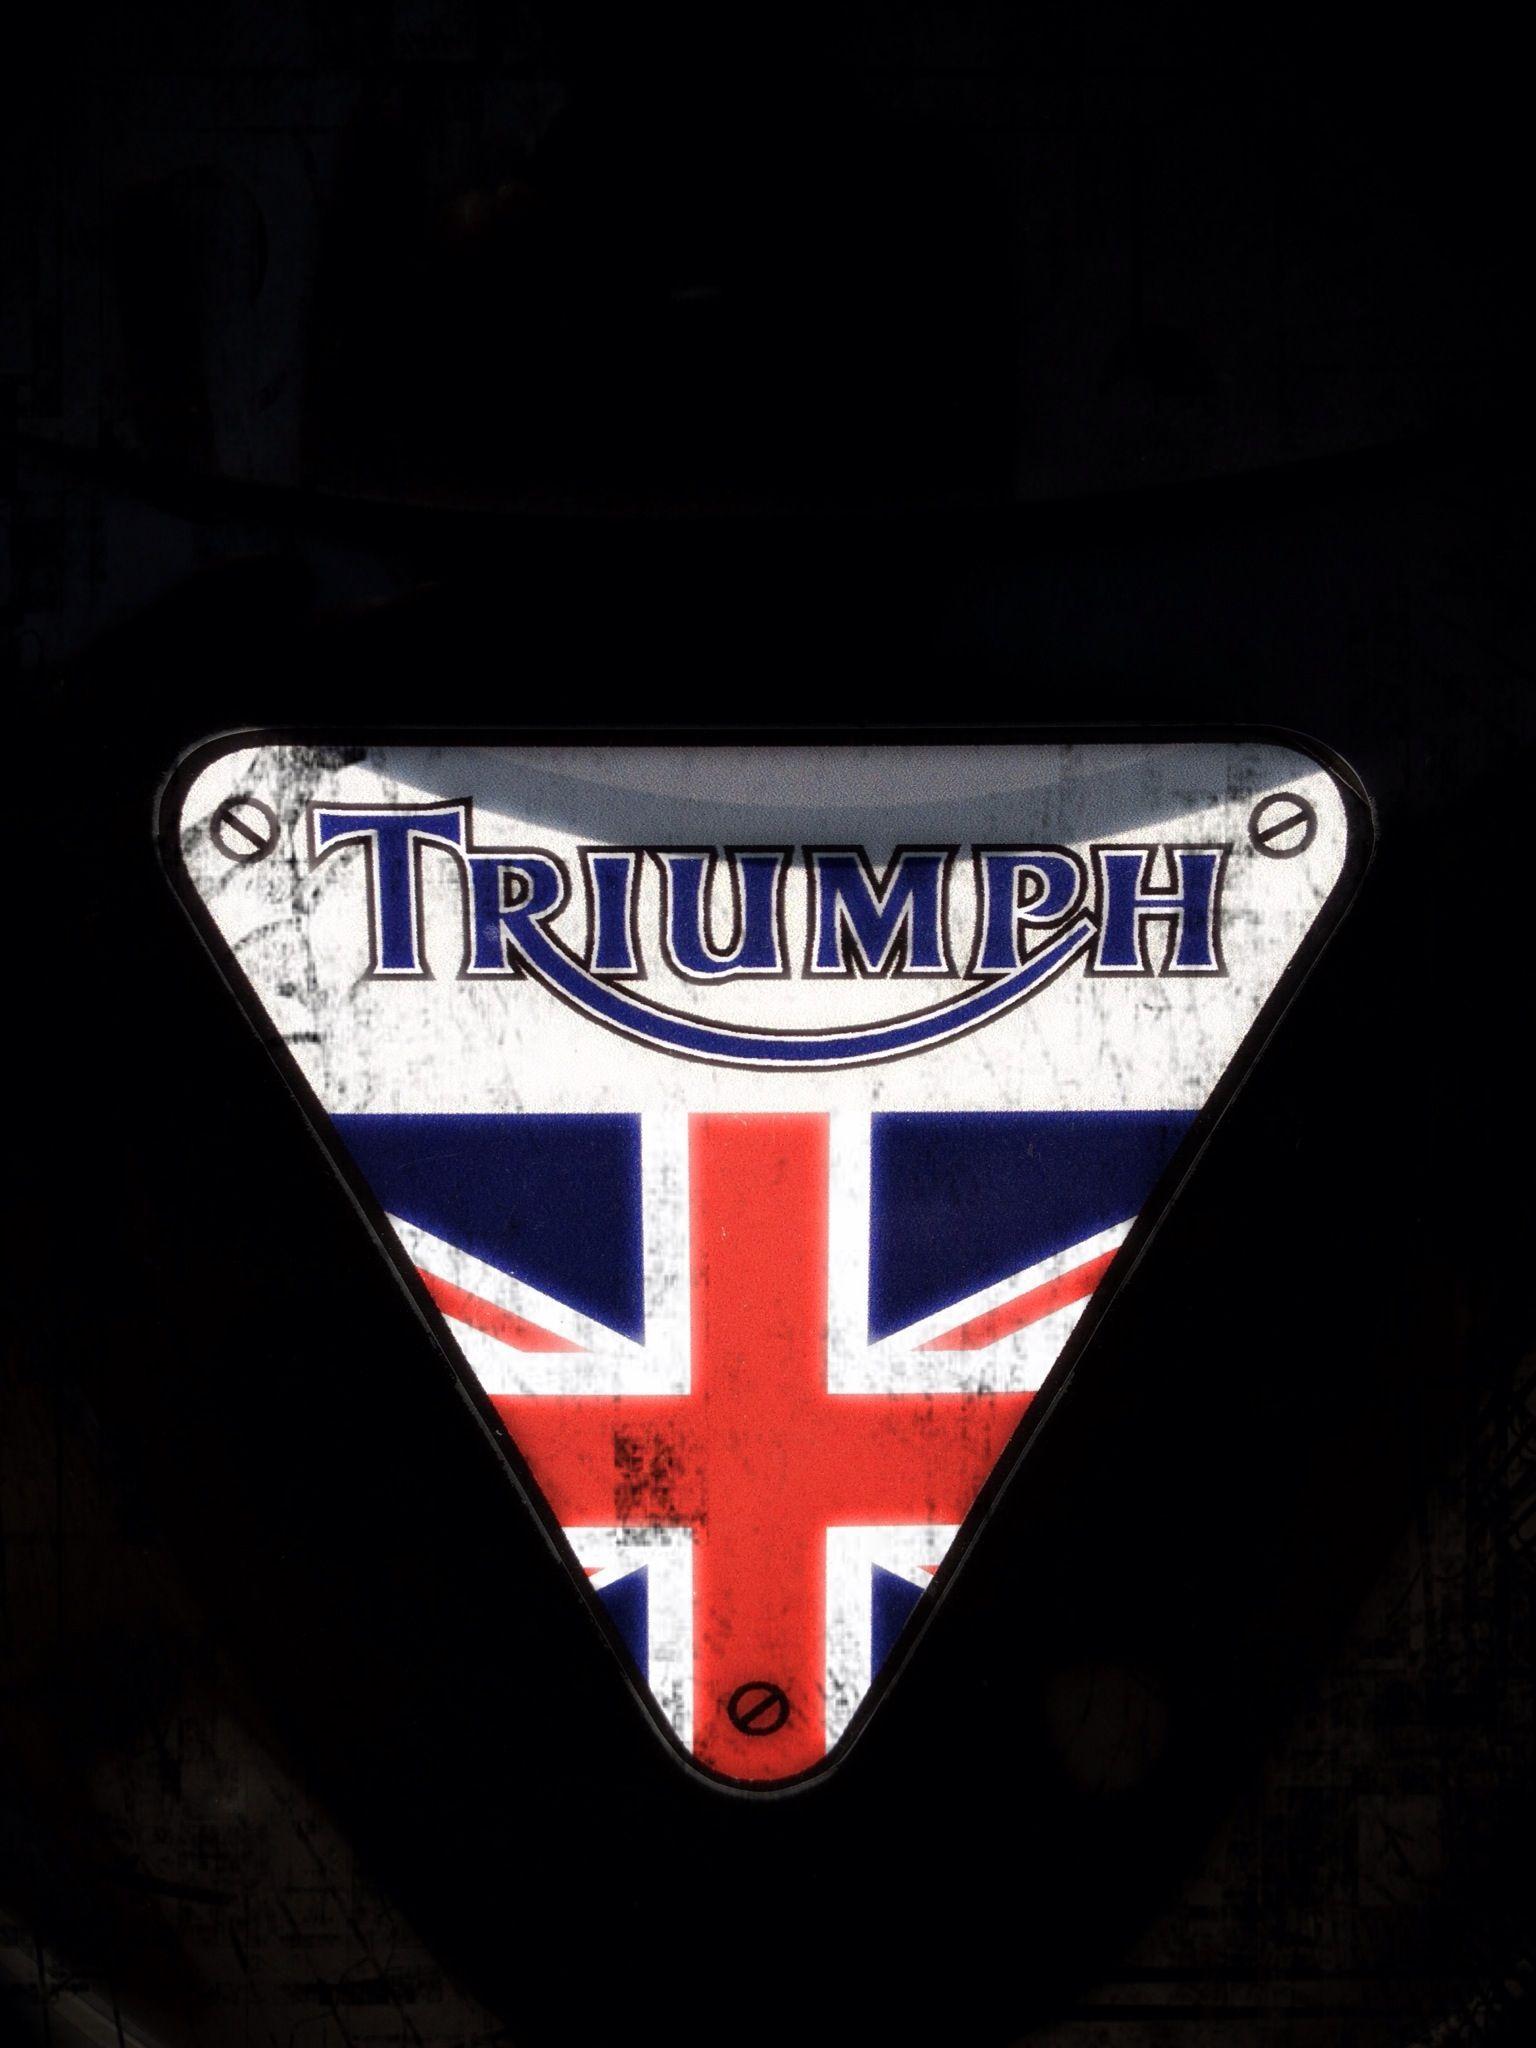 Triumph Bonneville Logo - Triumph logo | Motostories | Triumph motorcycles, Triumph logo ...